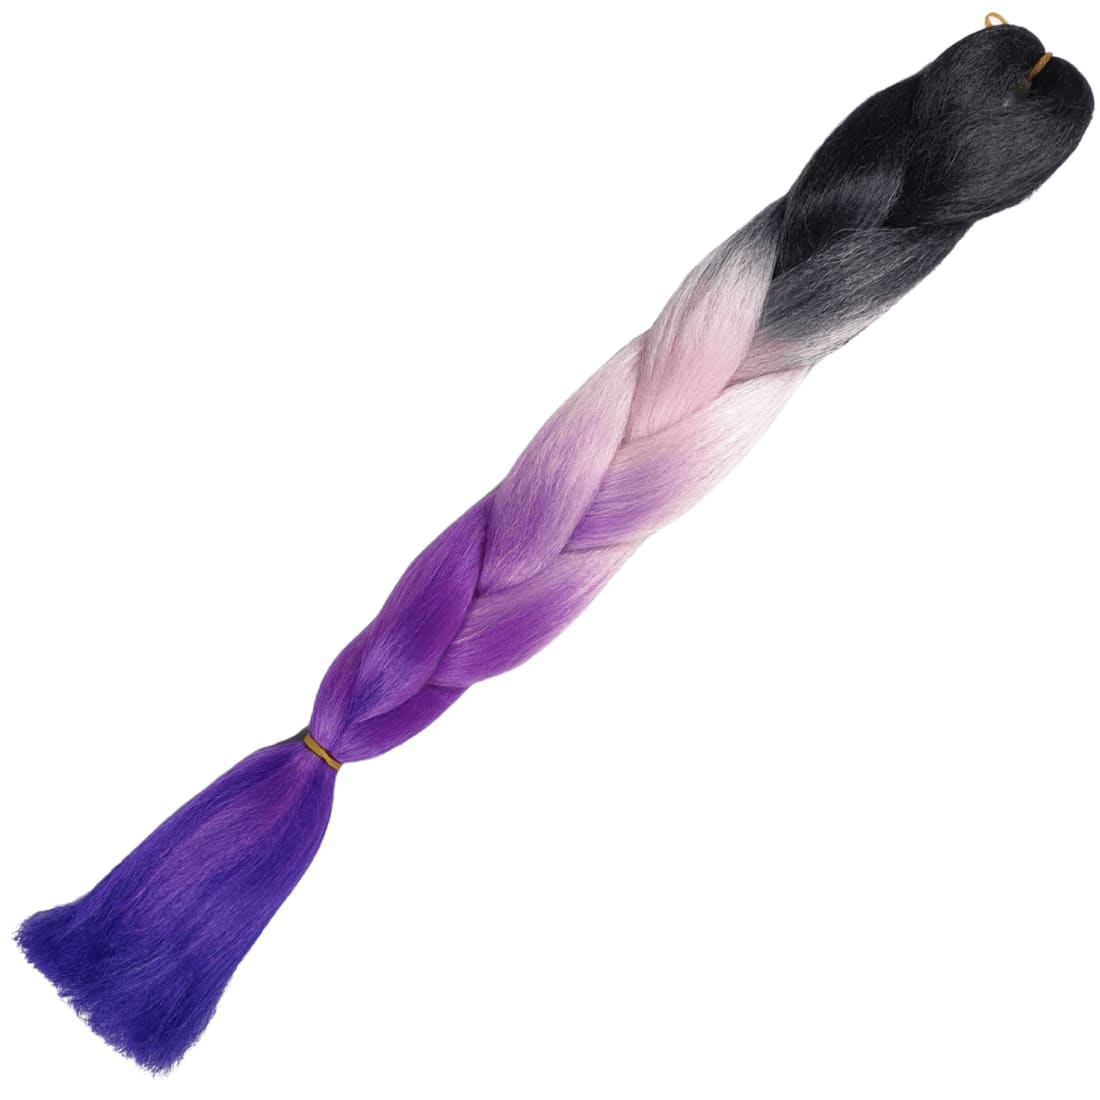 Afrihair Braid No D1 - Ombre Black/Pink/Purple/Purple - 24 